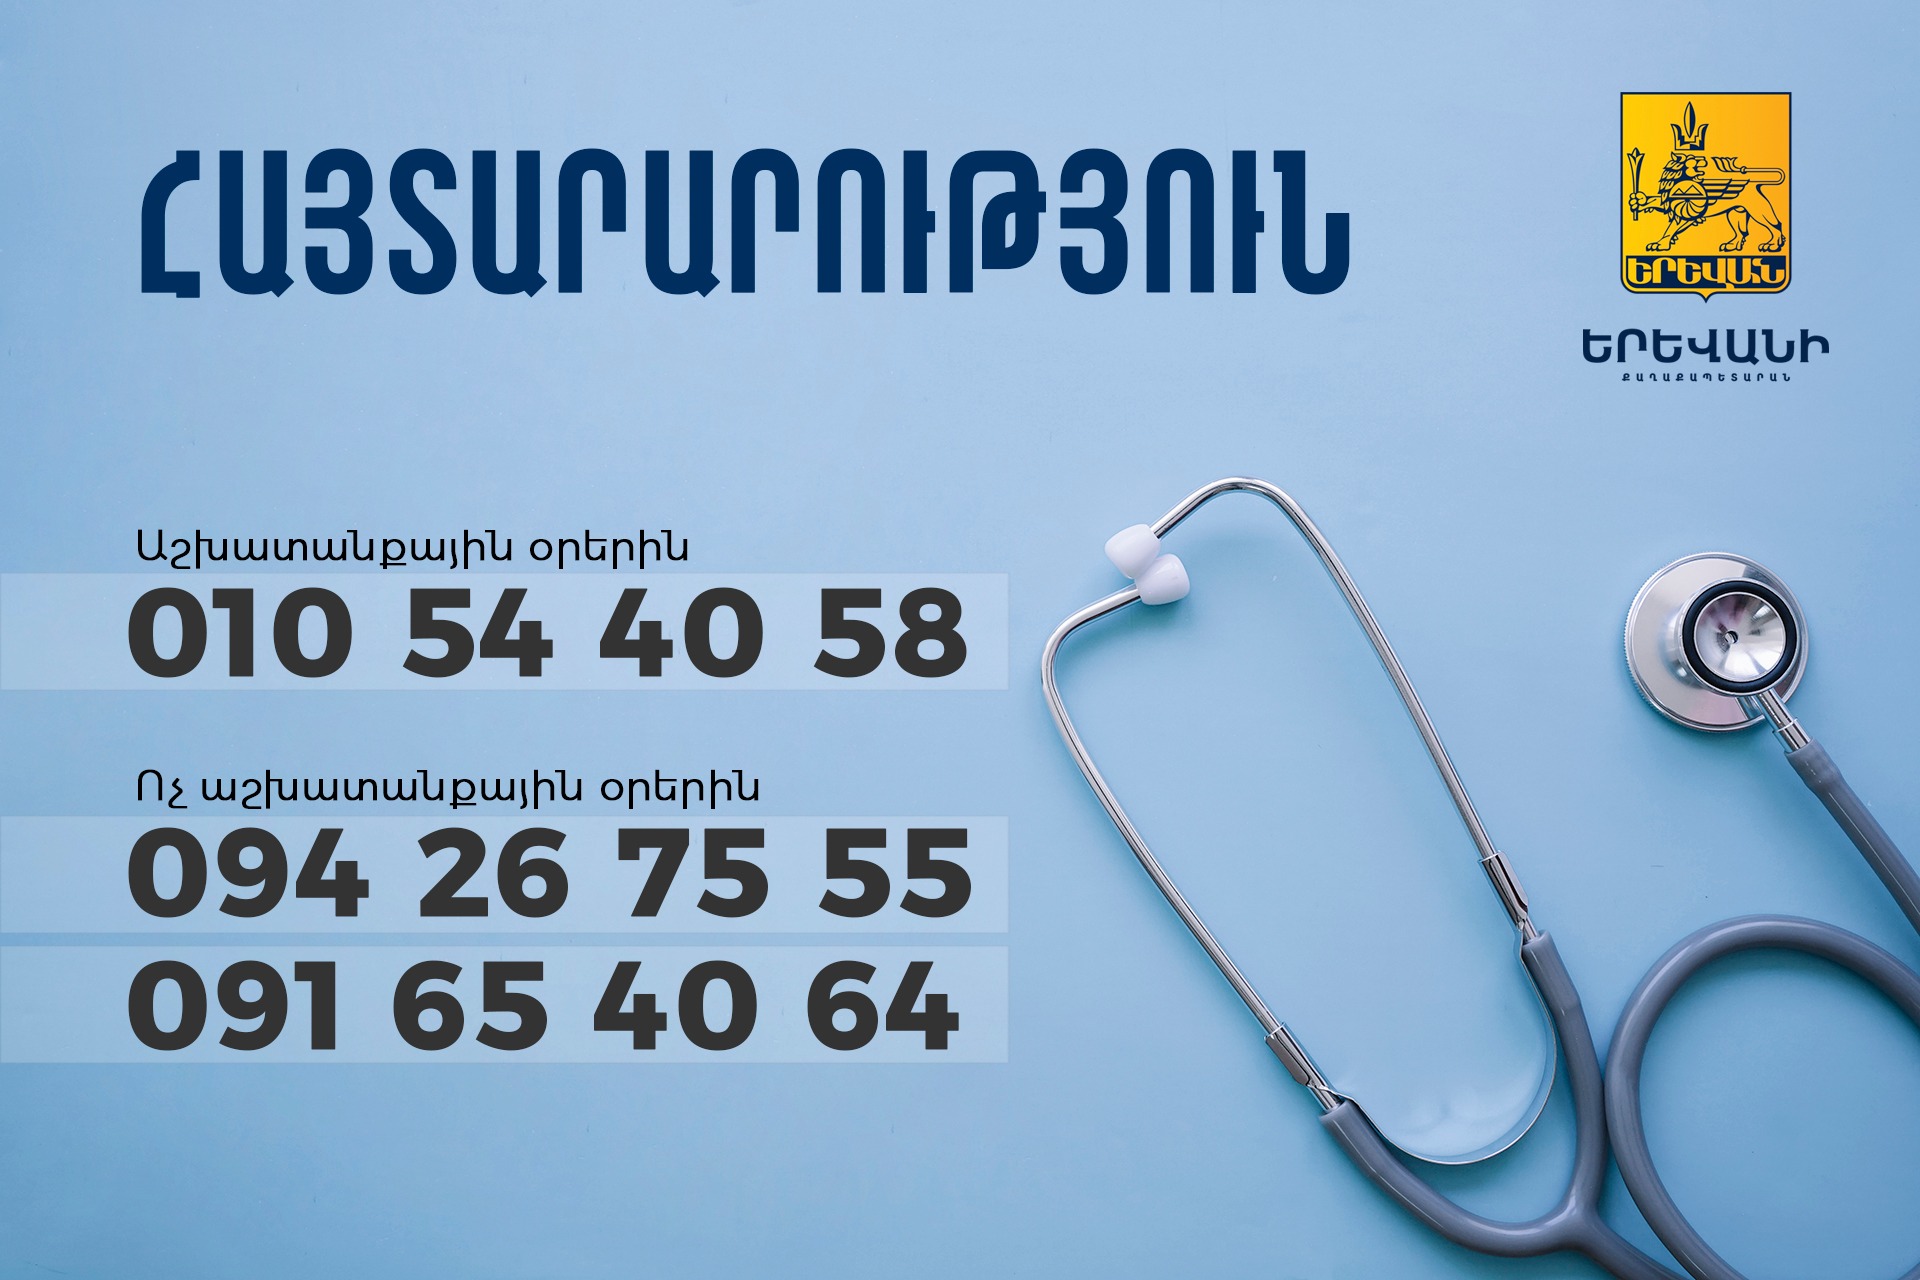 В случае проблем со здоровьем иностранные граждане могут связаться со специалистами управления здравоохранения мэрии Еревана